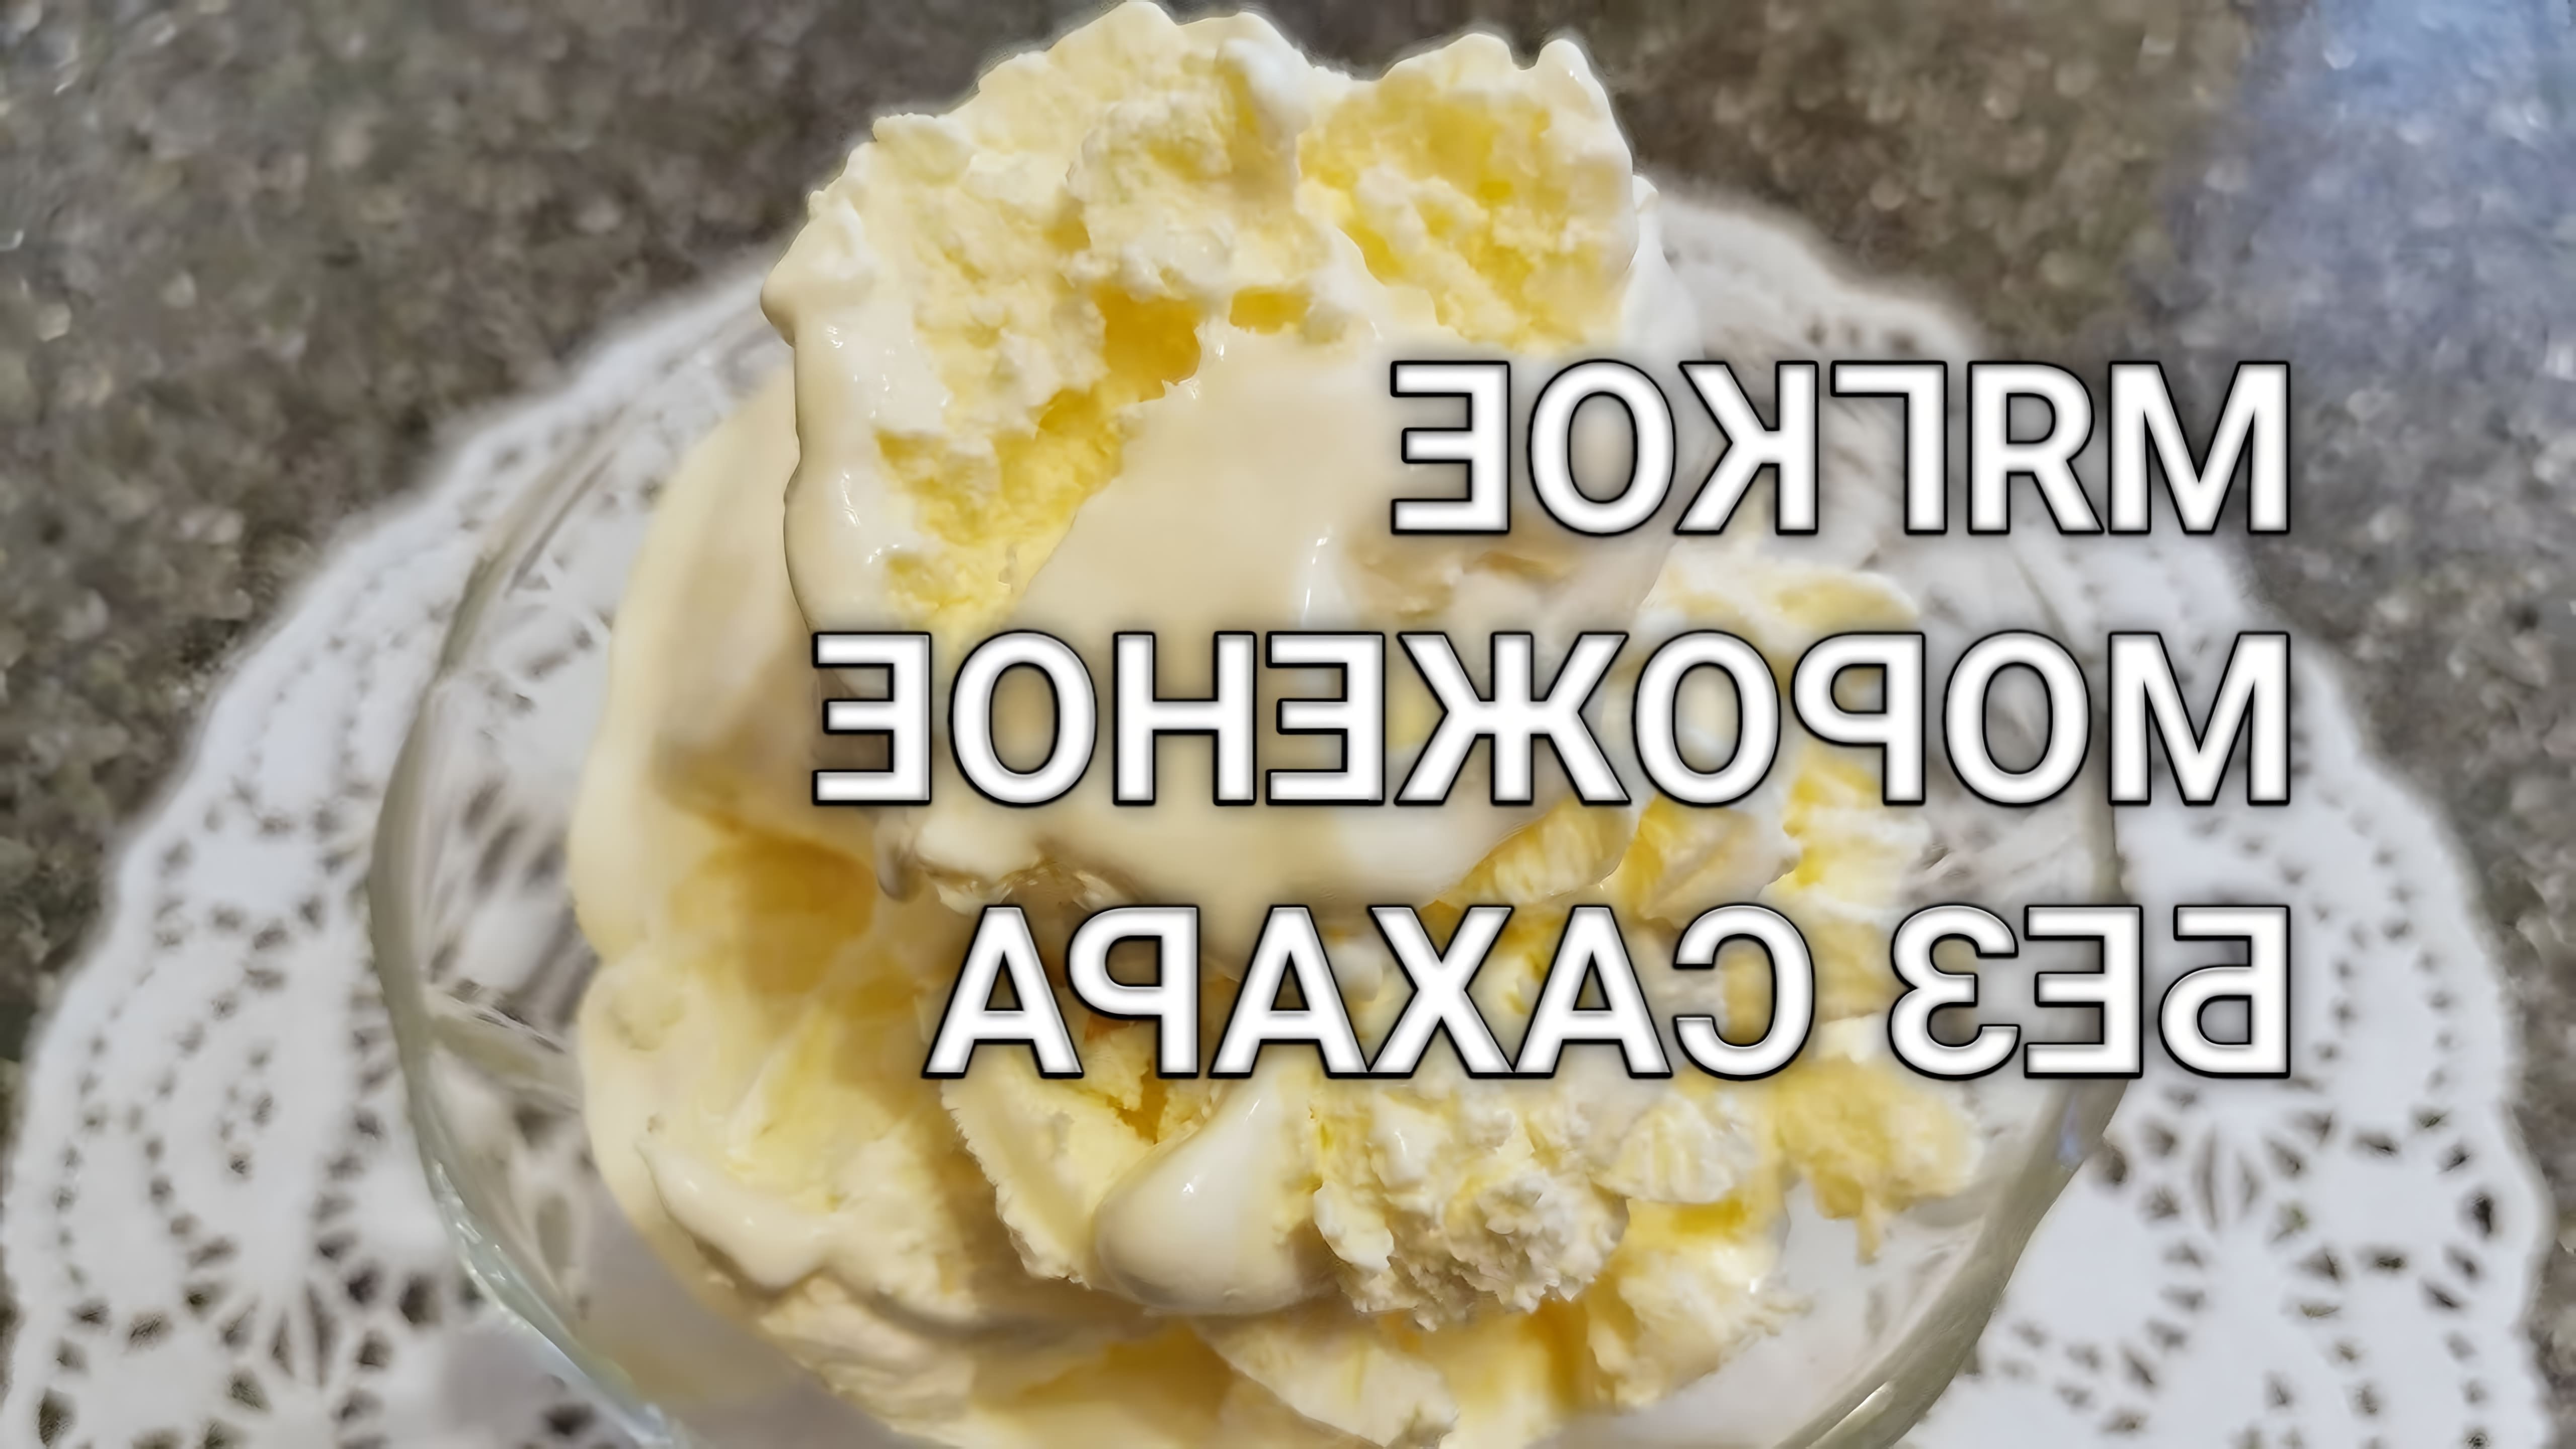 В этом видео Наталья показывает, как приготовить мягкое кето мороженое из сливок в домашних условиях